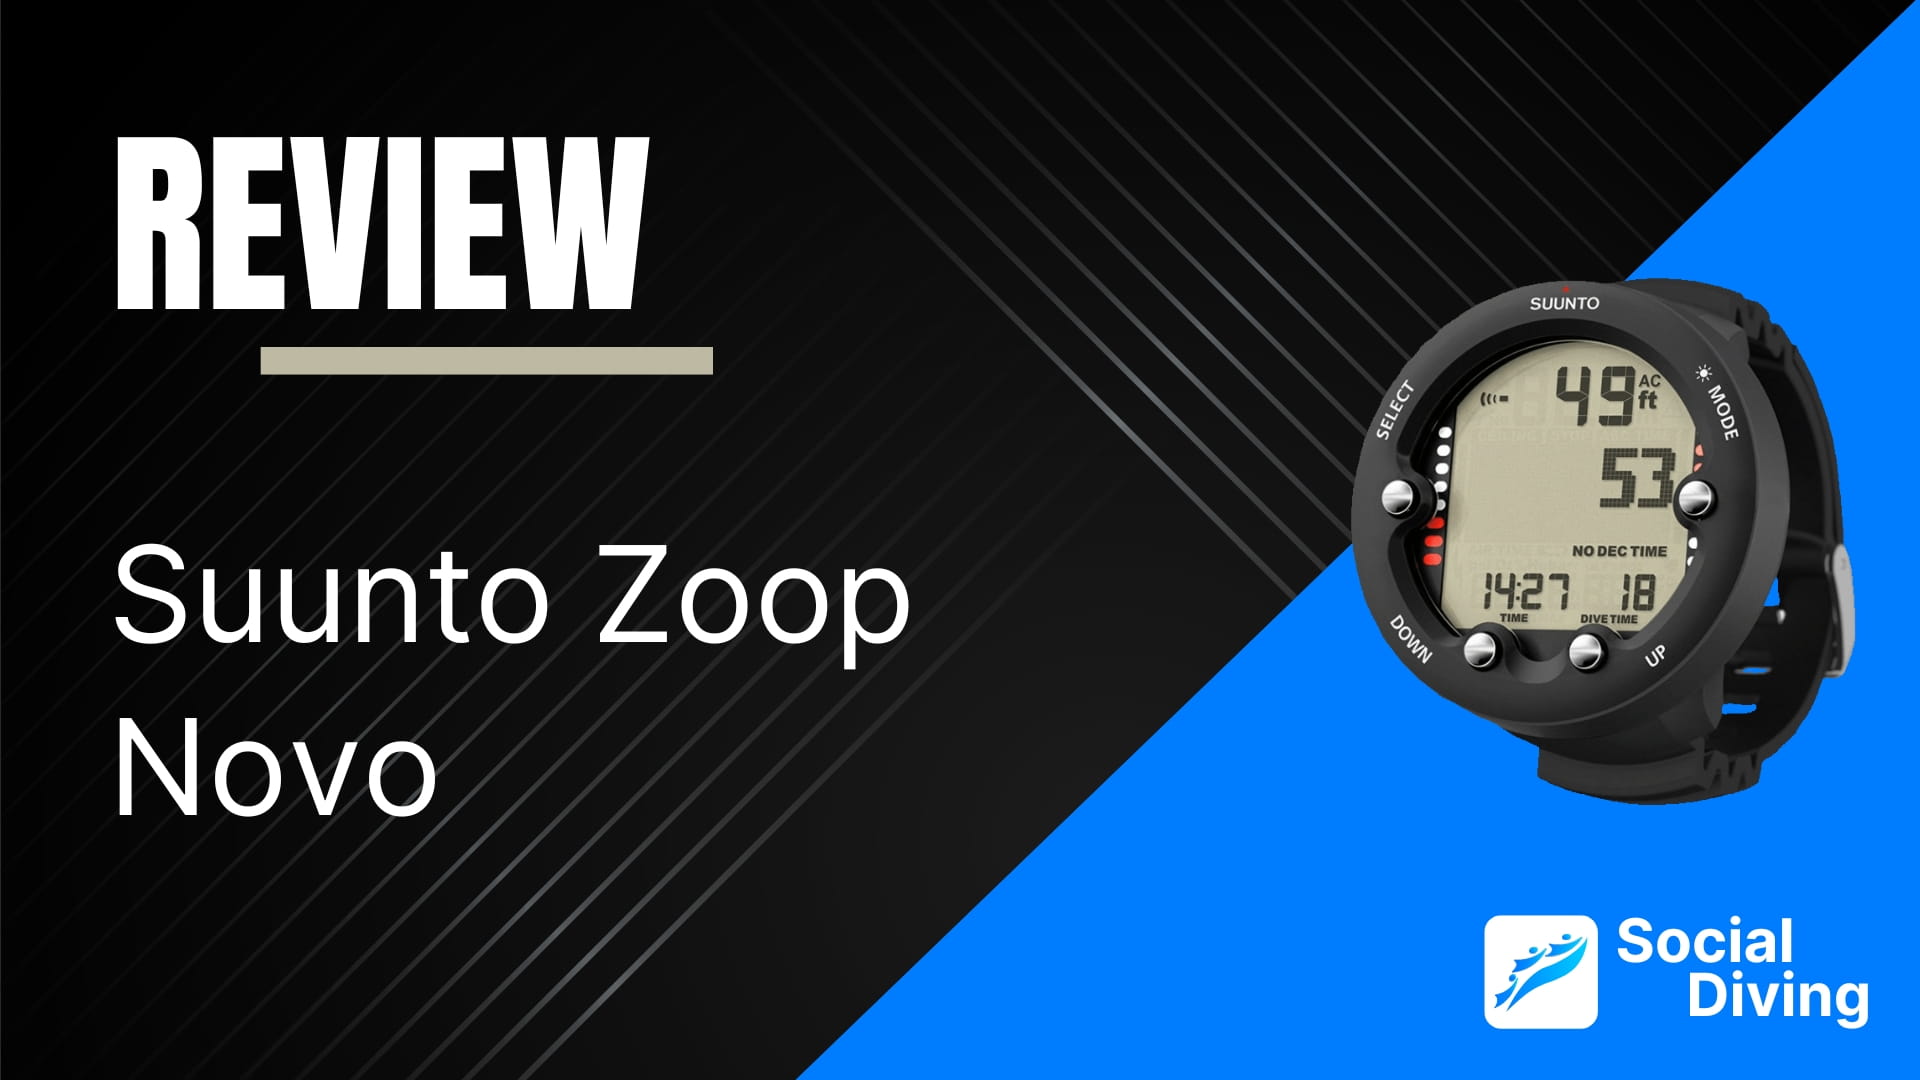 Suunto Zoop Novo review